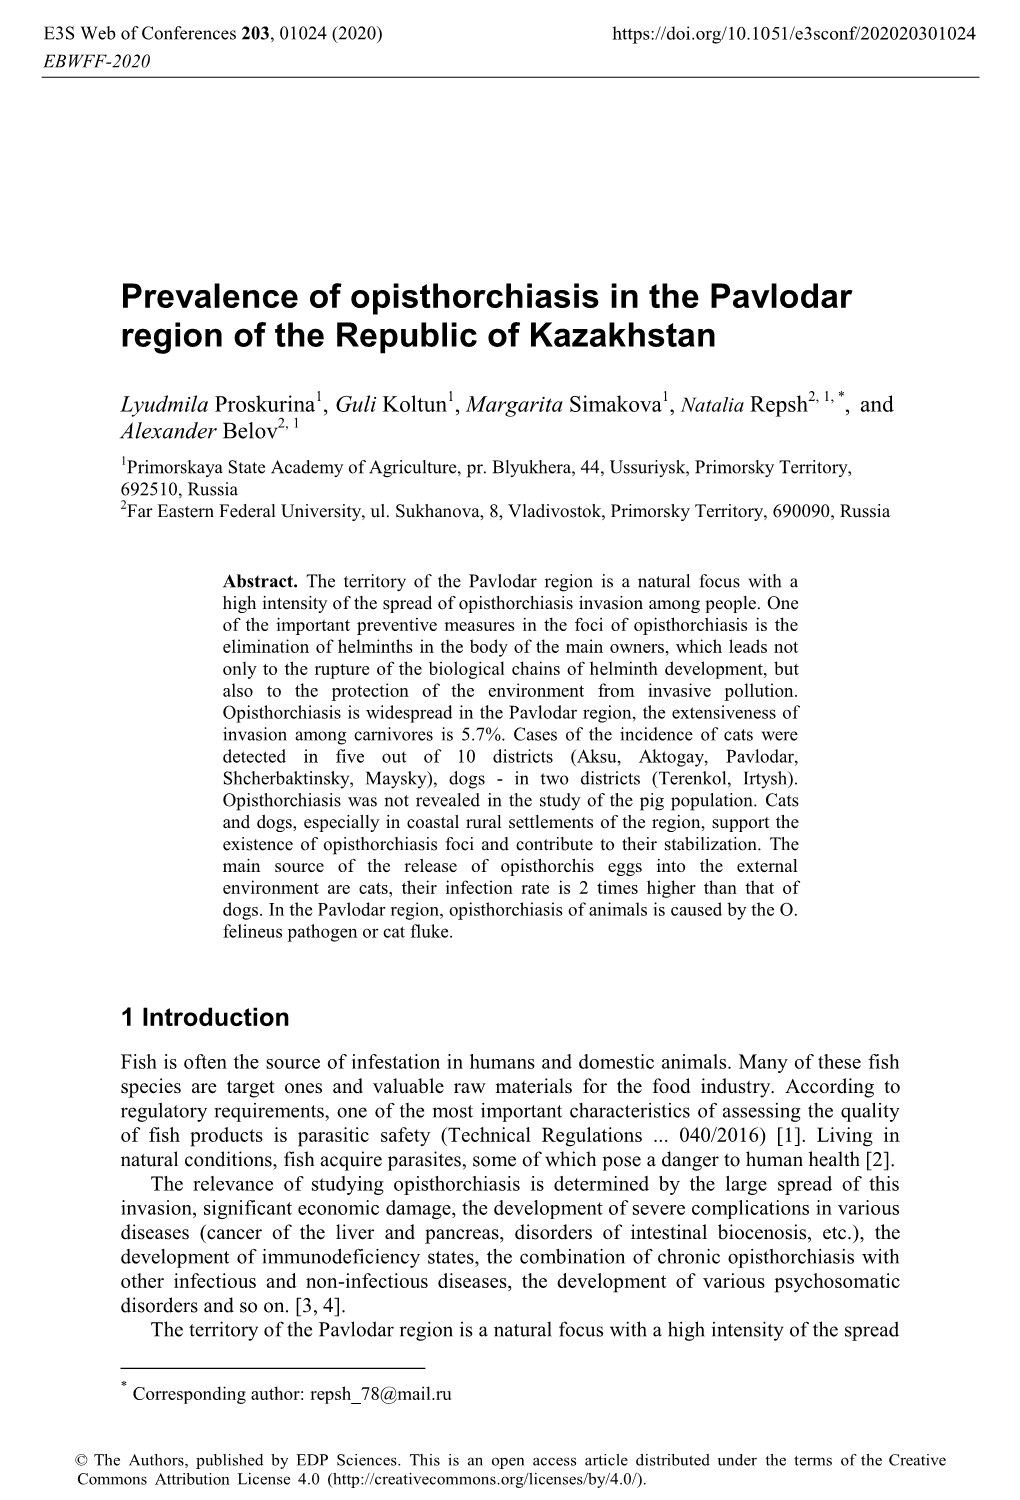 Prevalence of Opisthorchiasis in the Pavlodar Region of the Republic of Kazakhstan